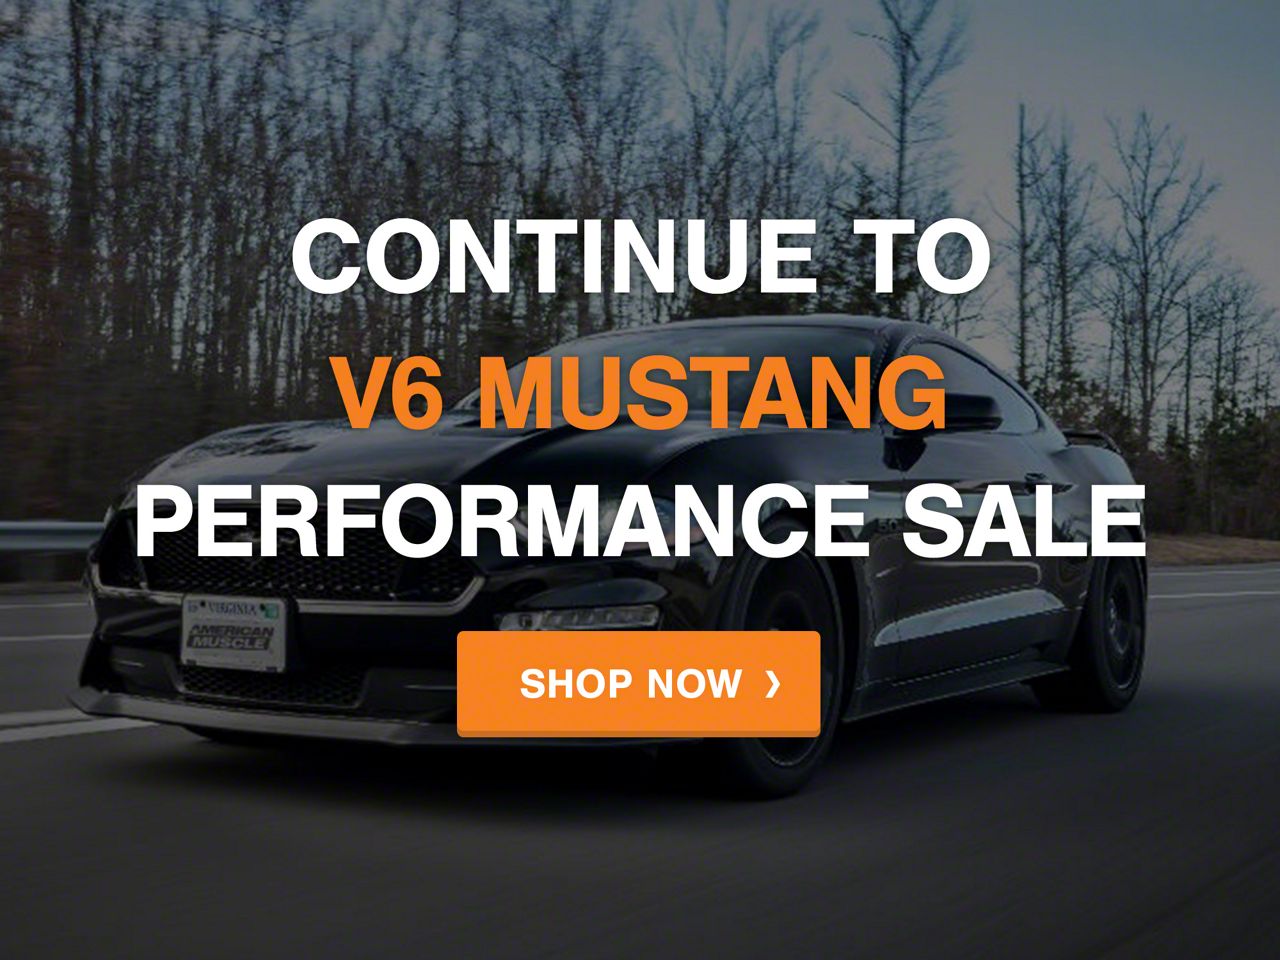 Mustang 2005-2009 Black Friday: Performance V6